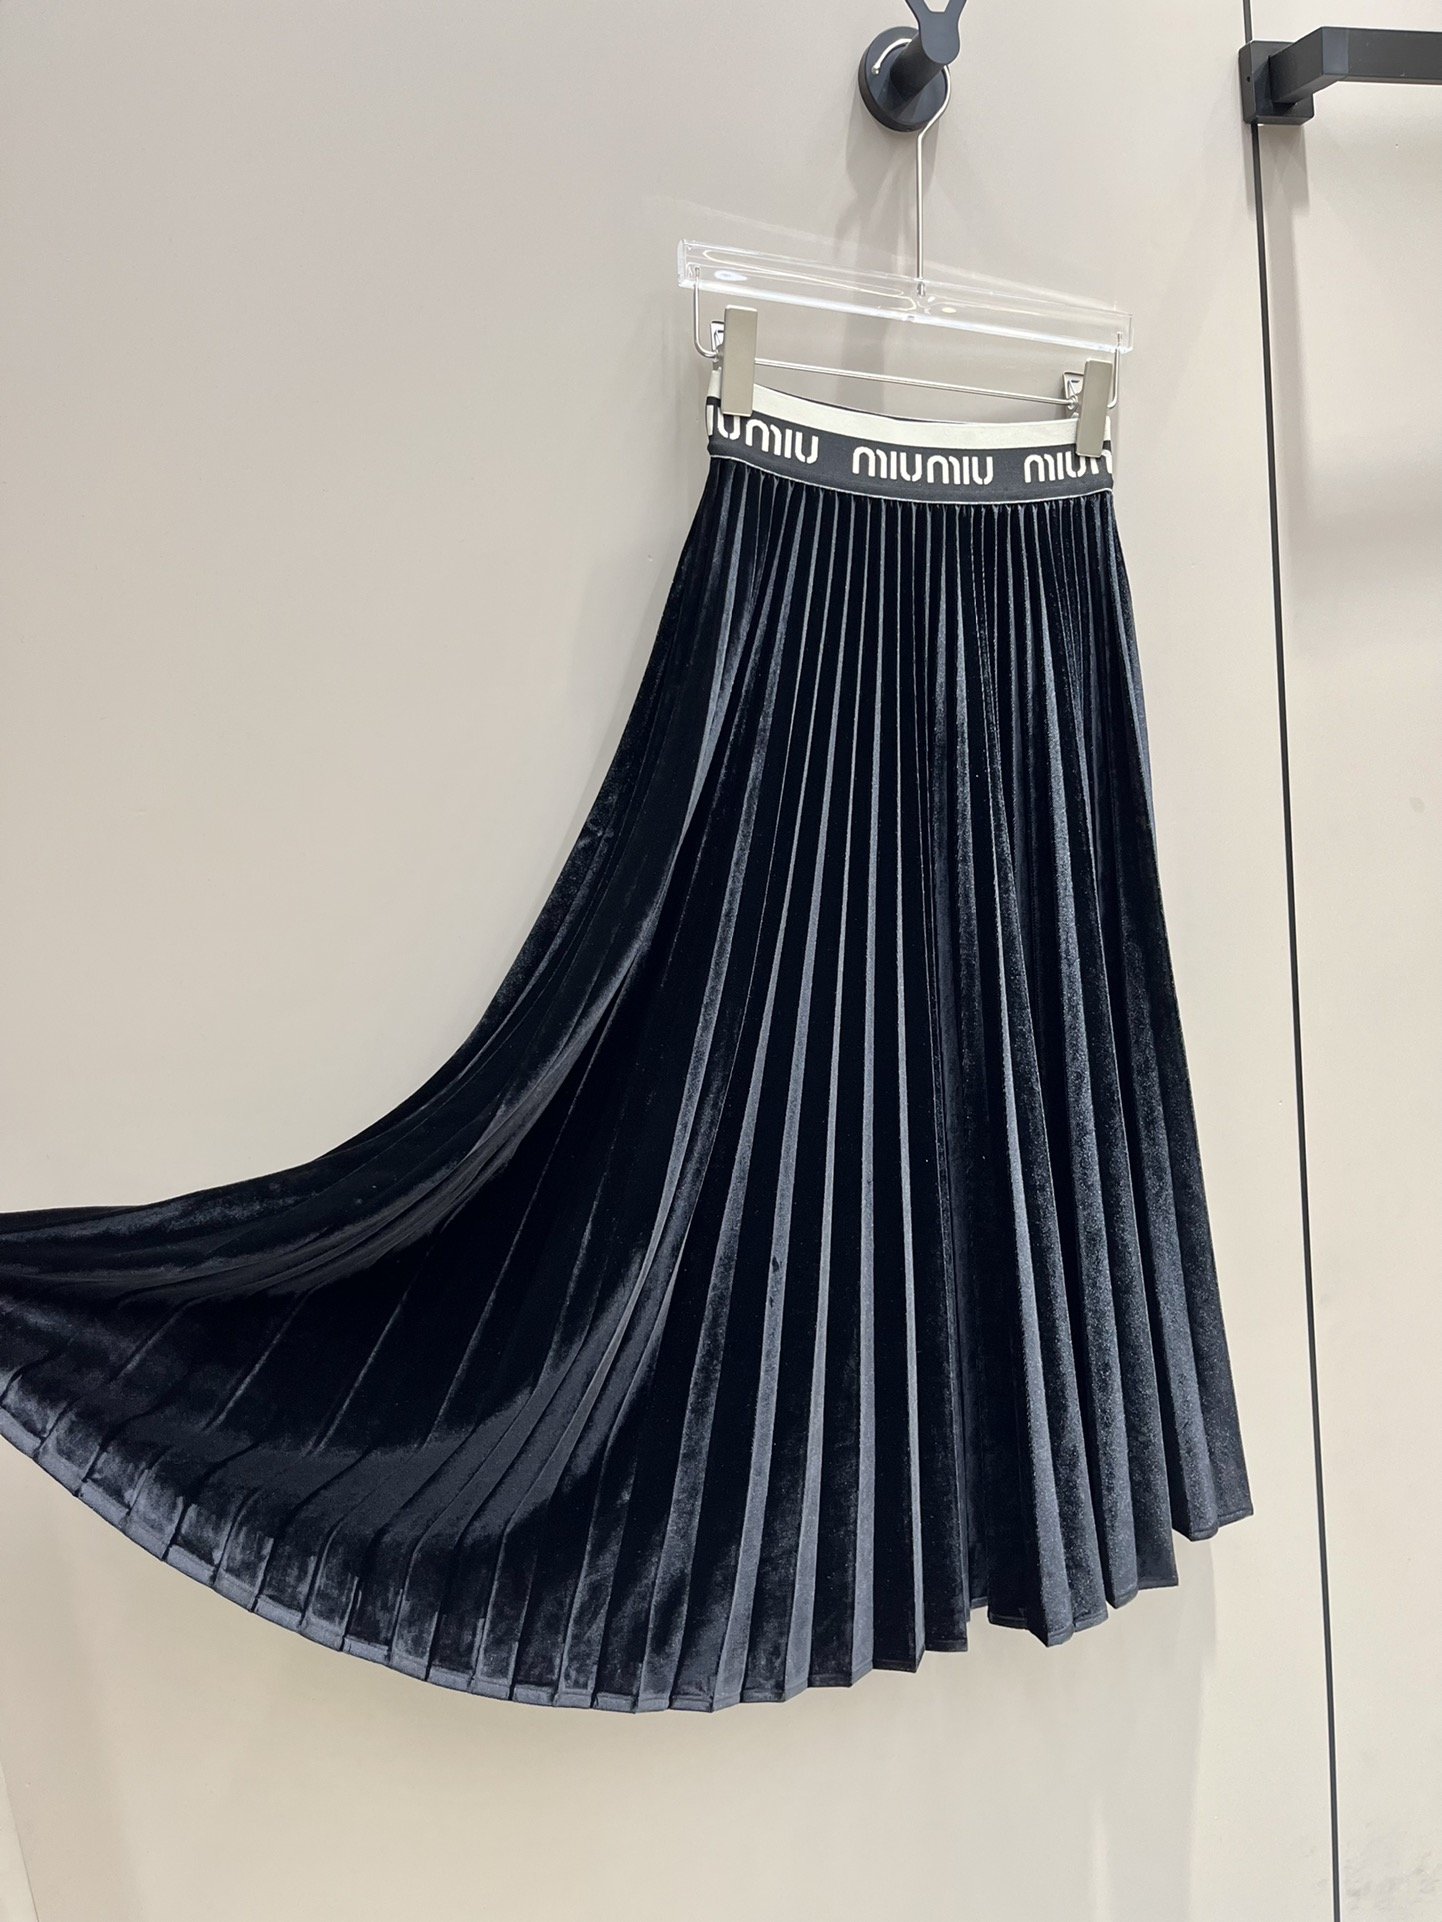 Skirt pleated velvet secondary length фото 6